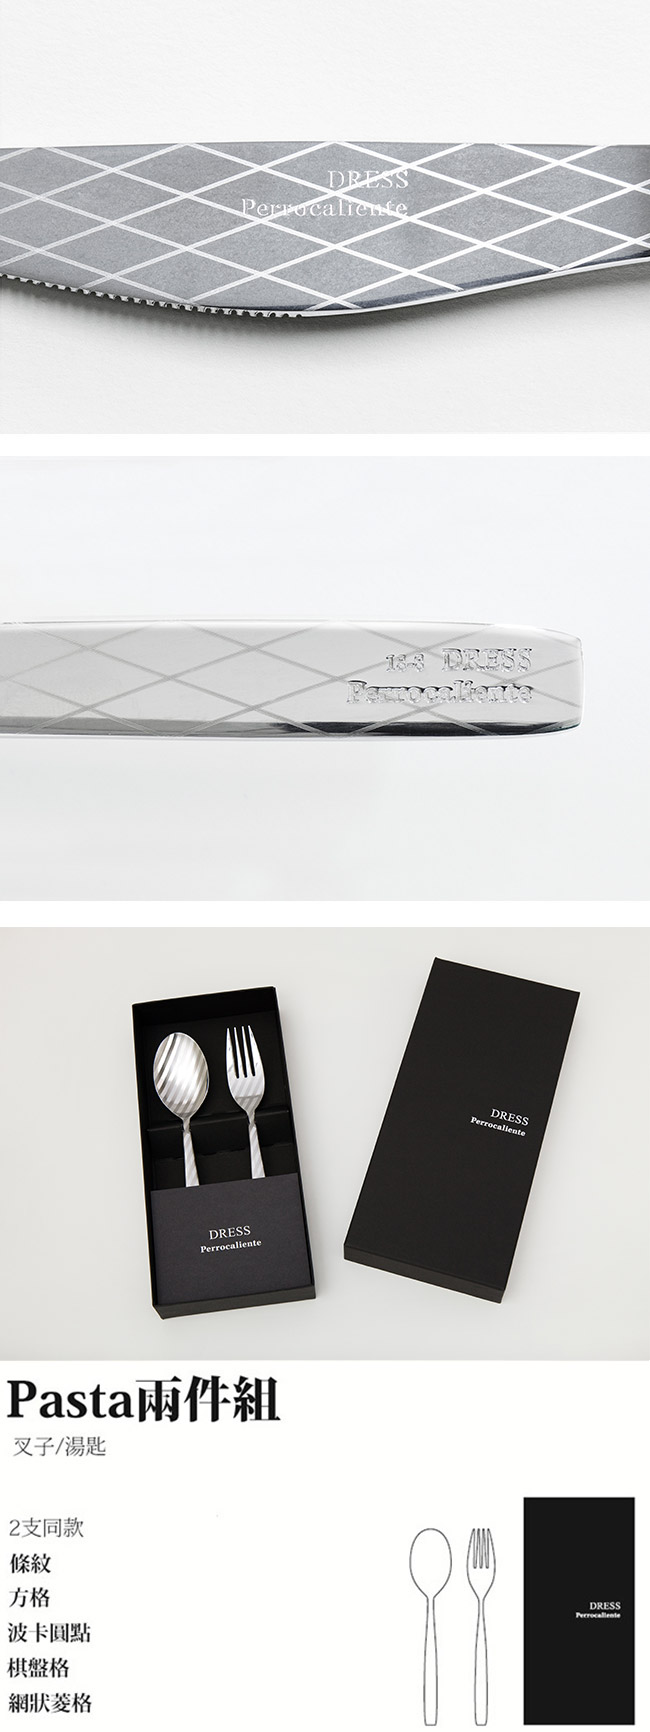 【3/26~4/1精選品牌9折優惠】Perrocaliente Dress Gift Set 銀色盒裝餐具組 Pasta兩件組 網狀菱格 (湯匙+叉子)